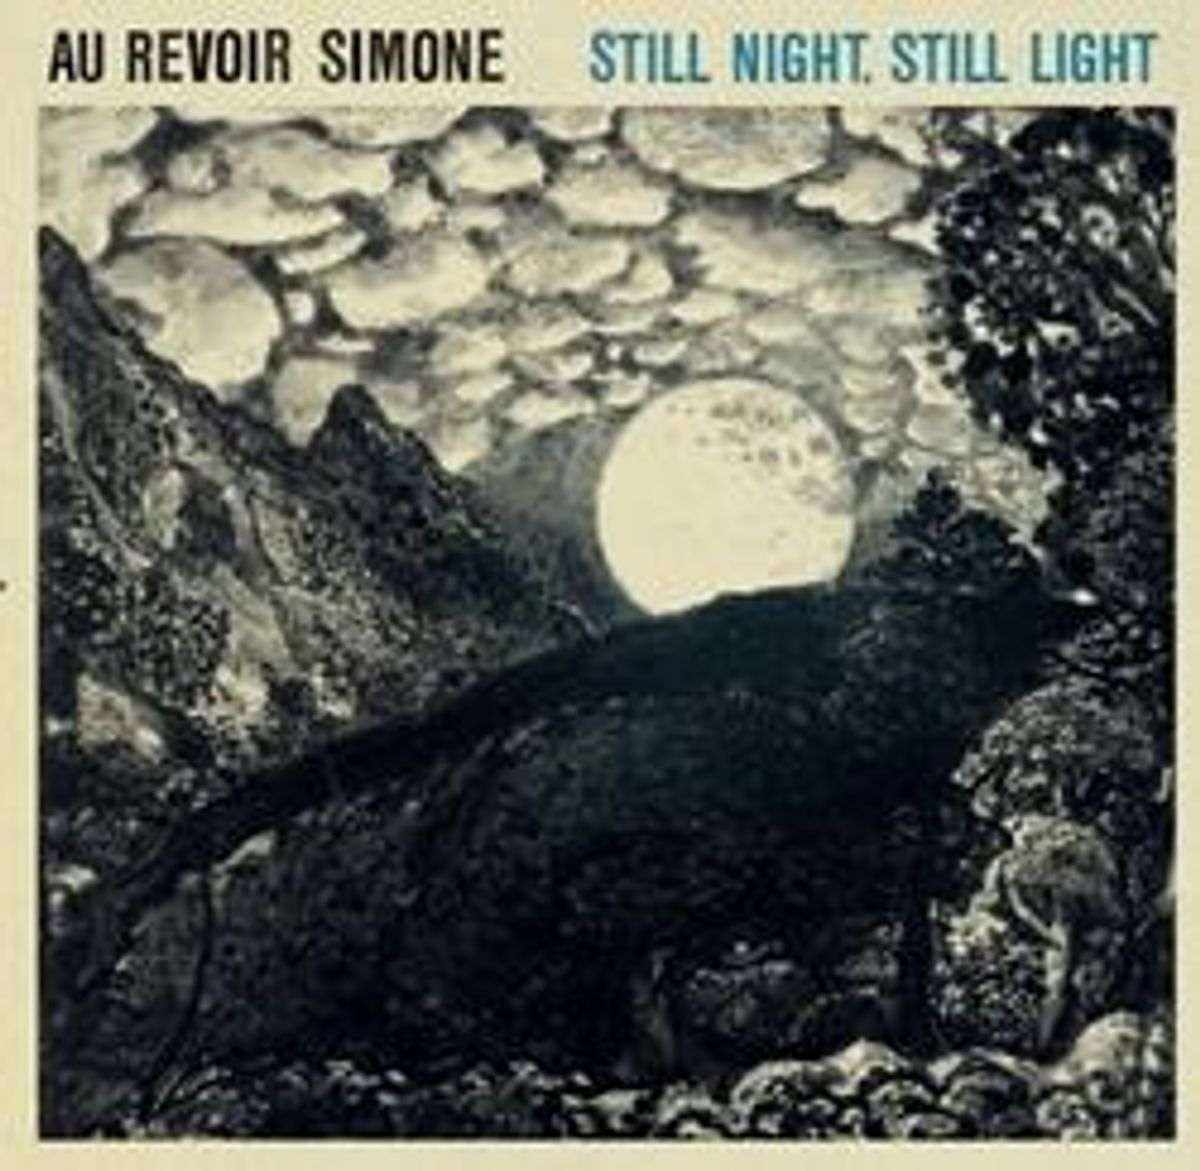 Au-revoir-simone-still-night-still-light